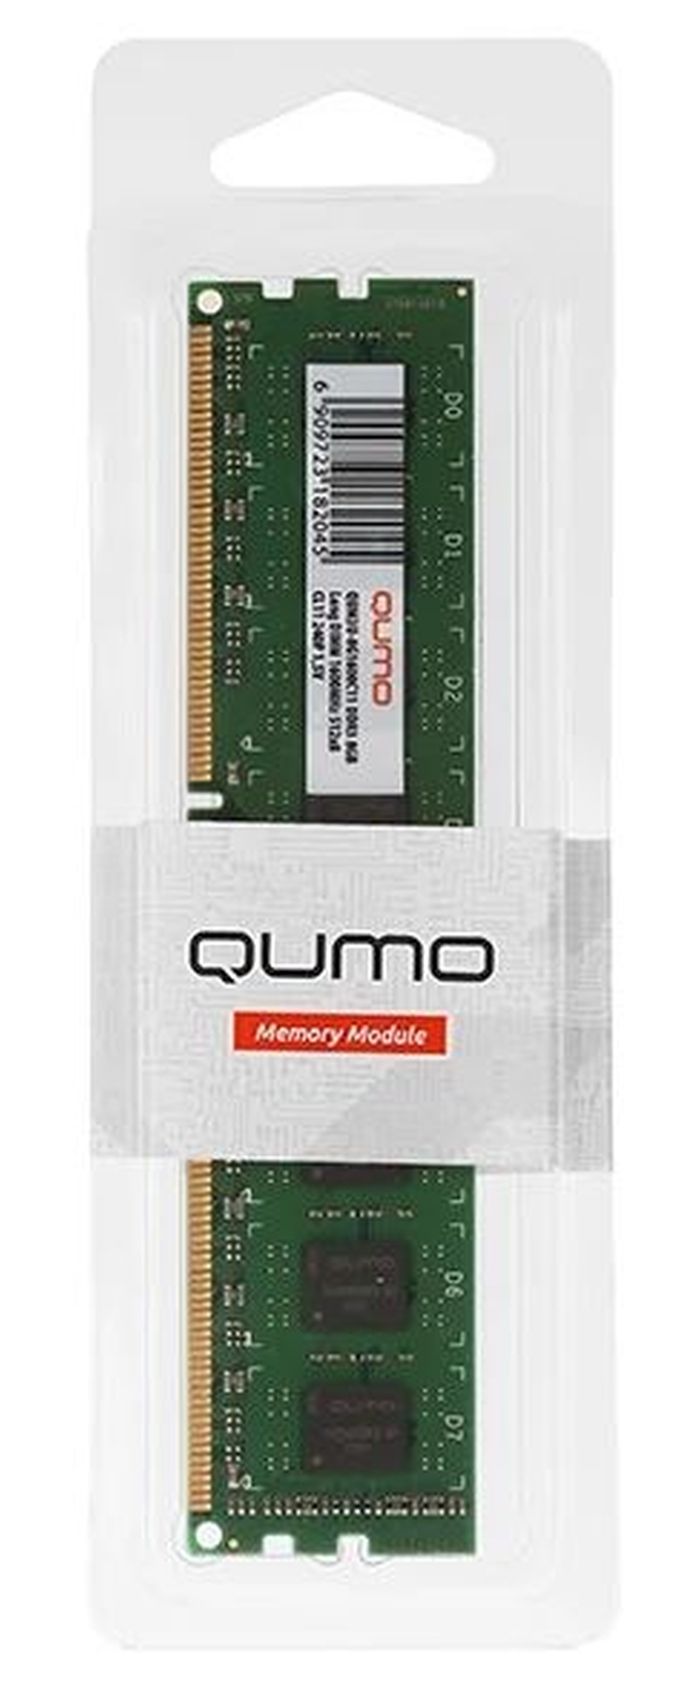 Оперативная память QUMO DDR3 DIMM 4GB 1333MHz (QUM3U-4G1333C9) оперативная память для компьютера qumo qum4u 8g2400p16 dimm 8gb ddr4 2400 mhz qum4u 8g2400p16